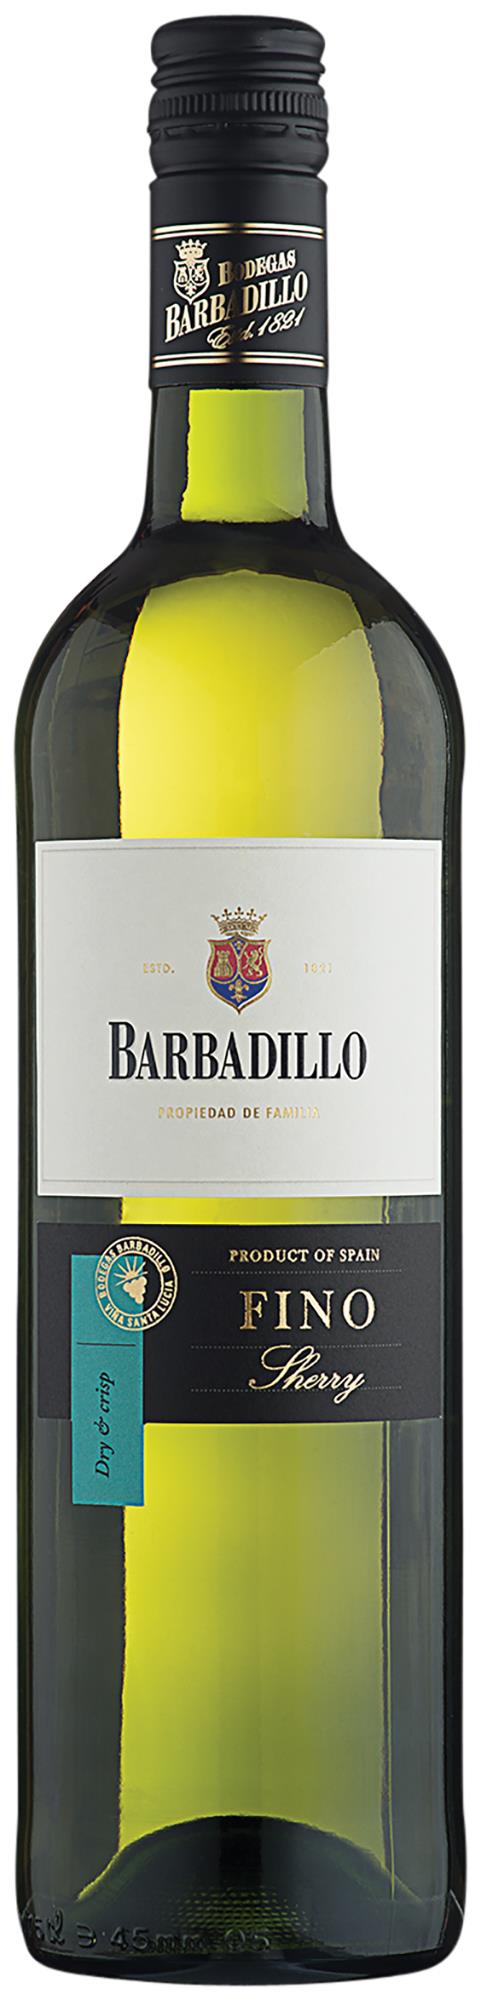 BARBADILLO FINO SHERRY 75 cl 15%